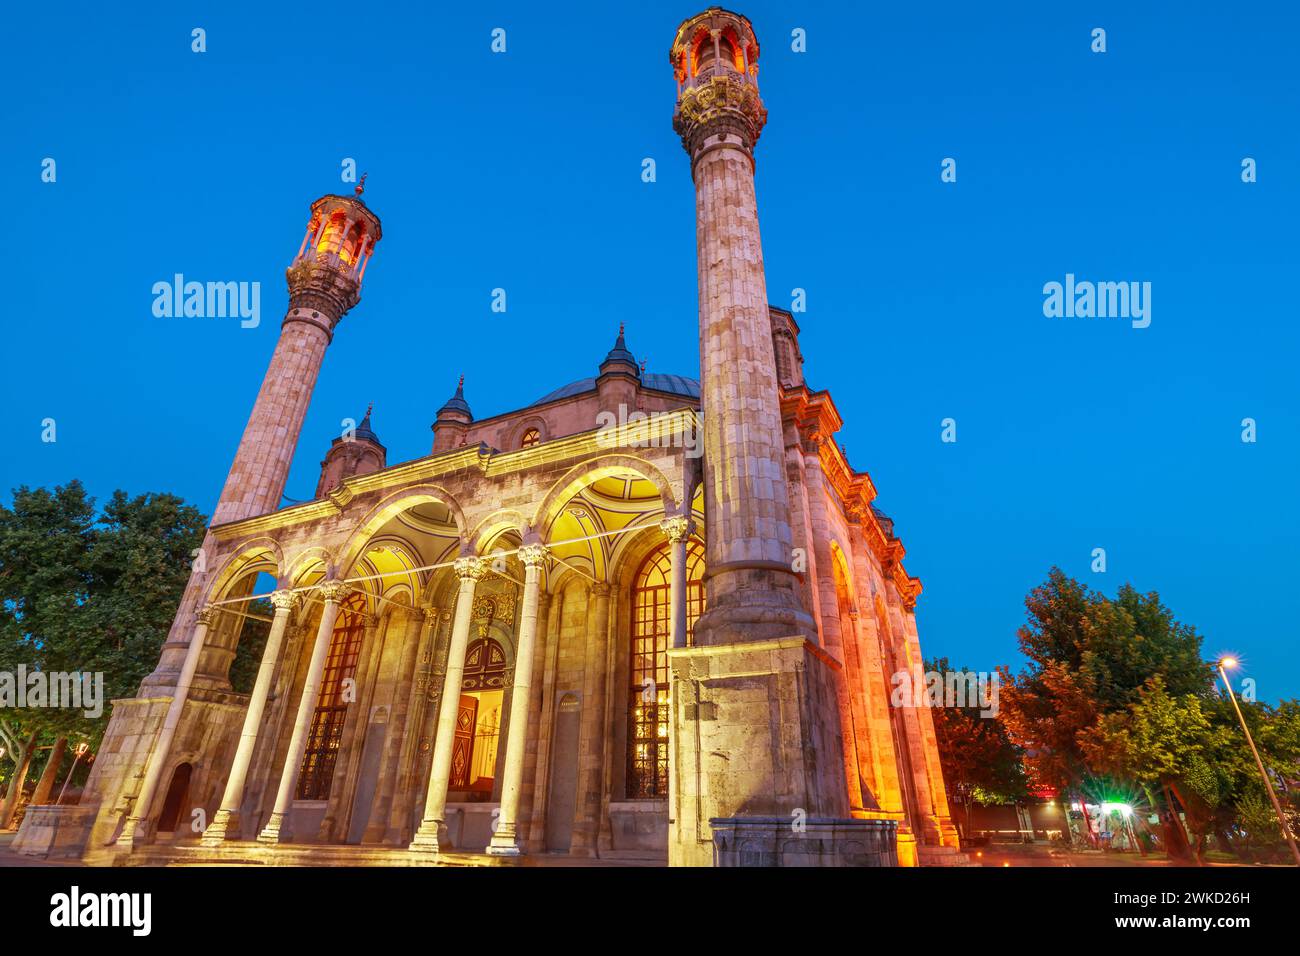 Baignée de la douce lueur du clair de lune, la mosquée Aziziye Camii de Konya en Turquie. Son extérieur est orné de sculptures en pierre complexes et géométriques Banque D'Images